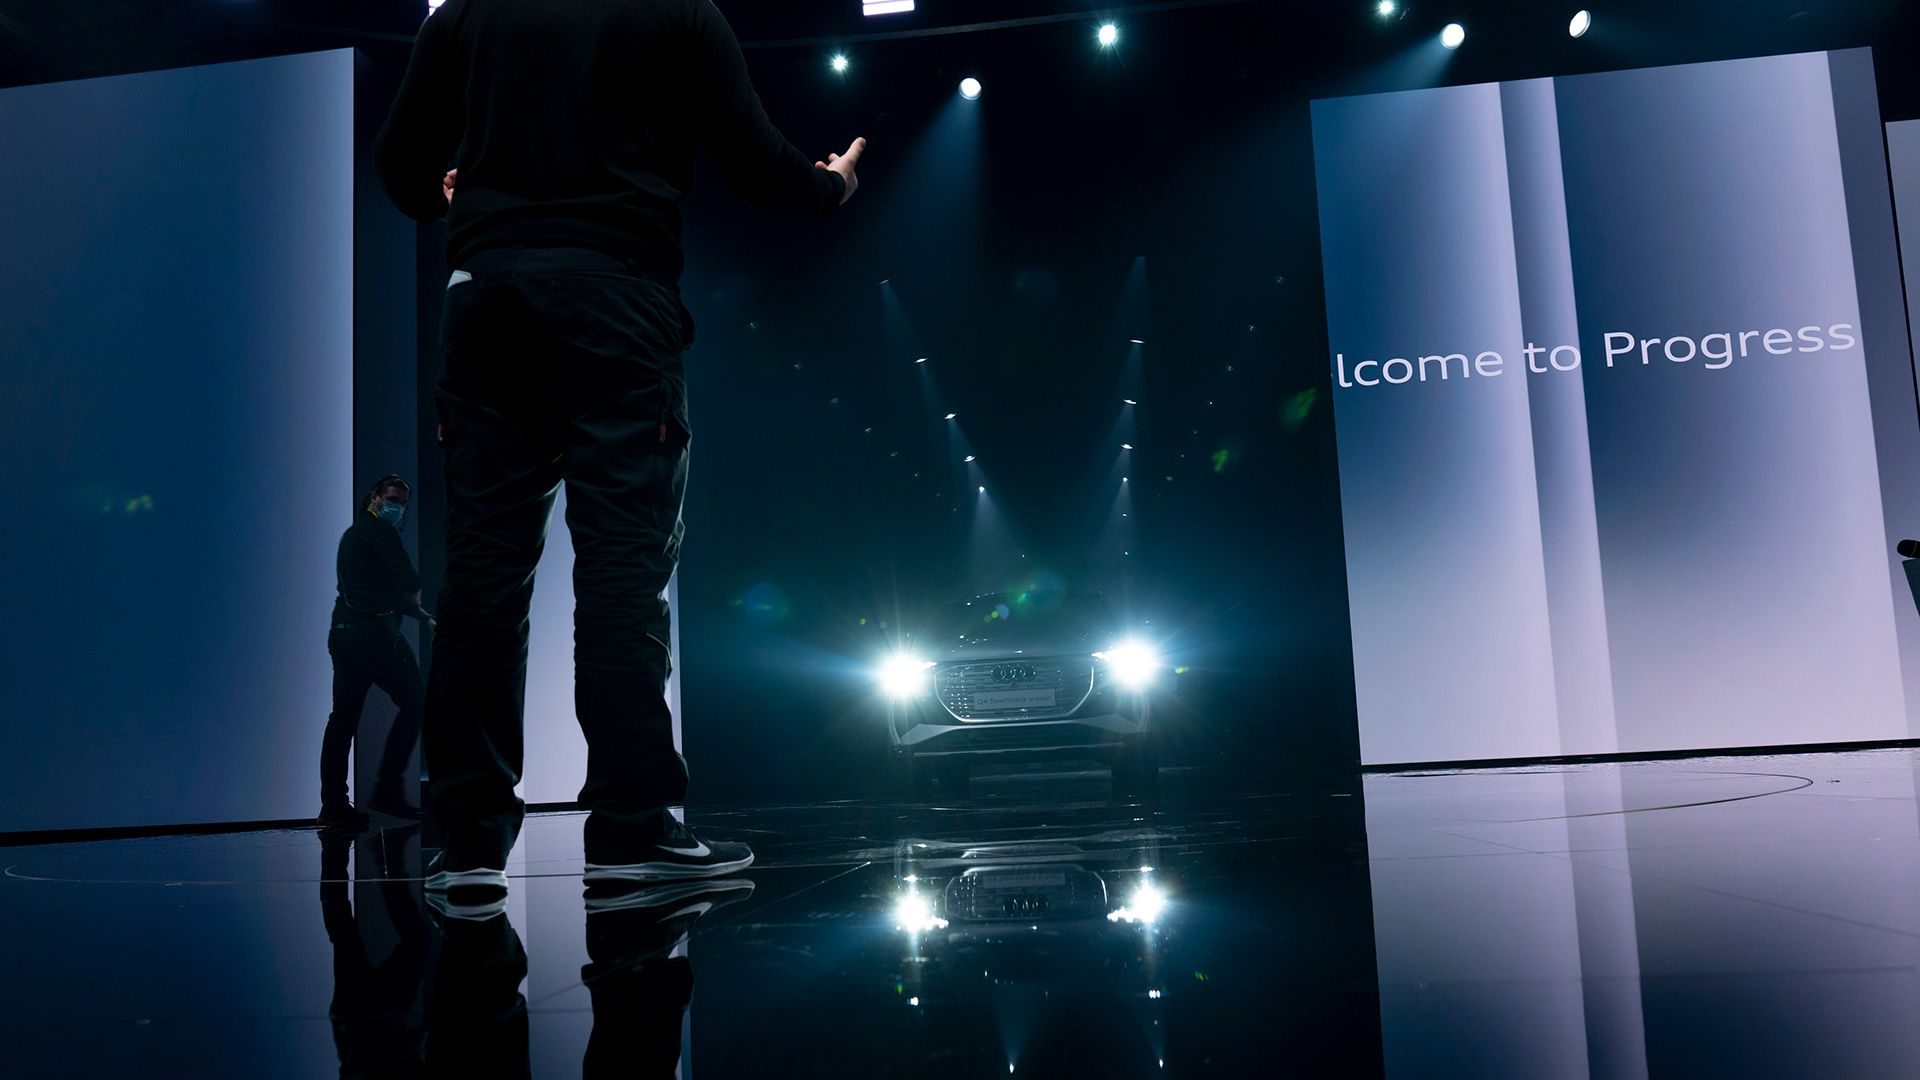 De Audi Q4 e-tron rijdt het toneel op, de koplampen branden. Rechts staat een beeldscherm met de tekst ‘Welcome to Progress’.